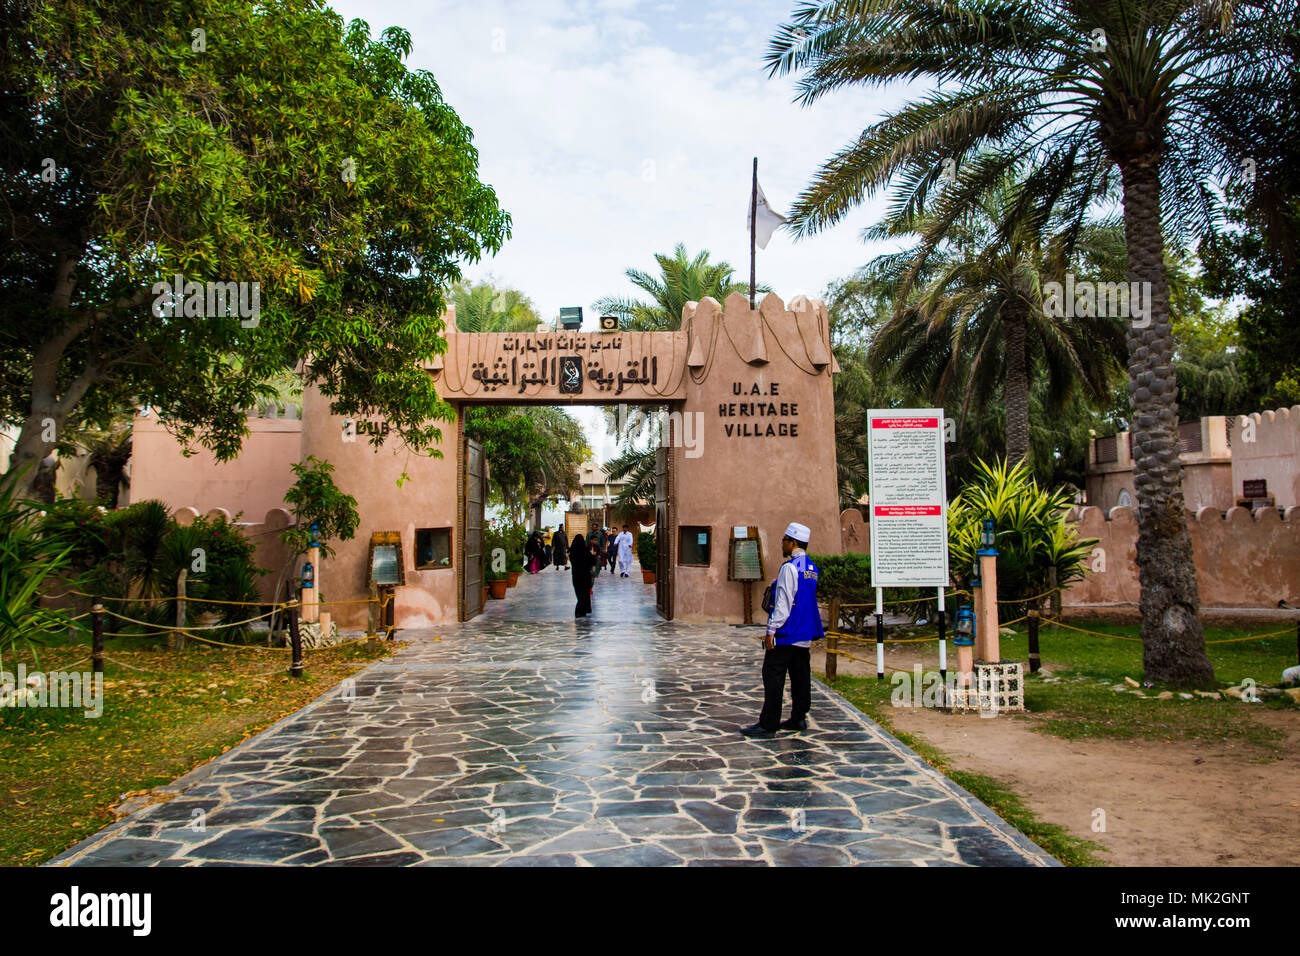 Abu Dhabi, UAE - Avril 27, 2018 Abu Dhabi : scène de village du patrimoine avec de nombreux visiteurs de marcher autour de jour Banque D'Images